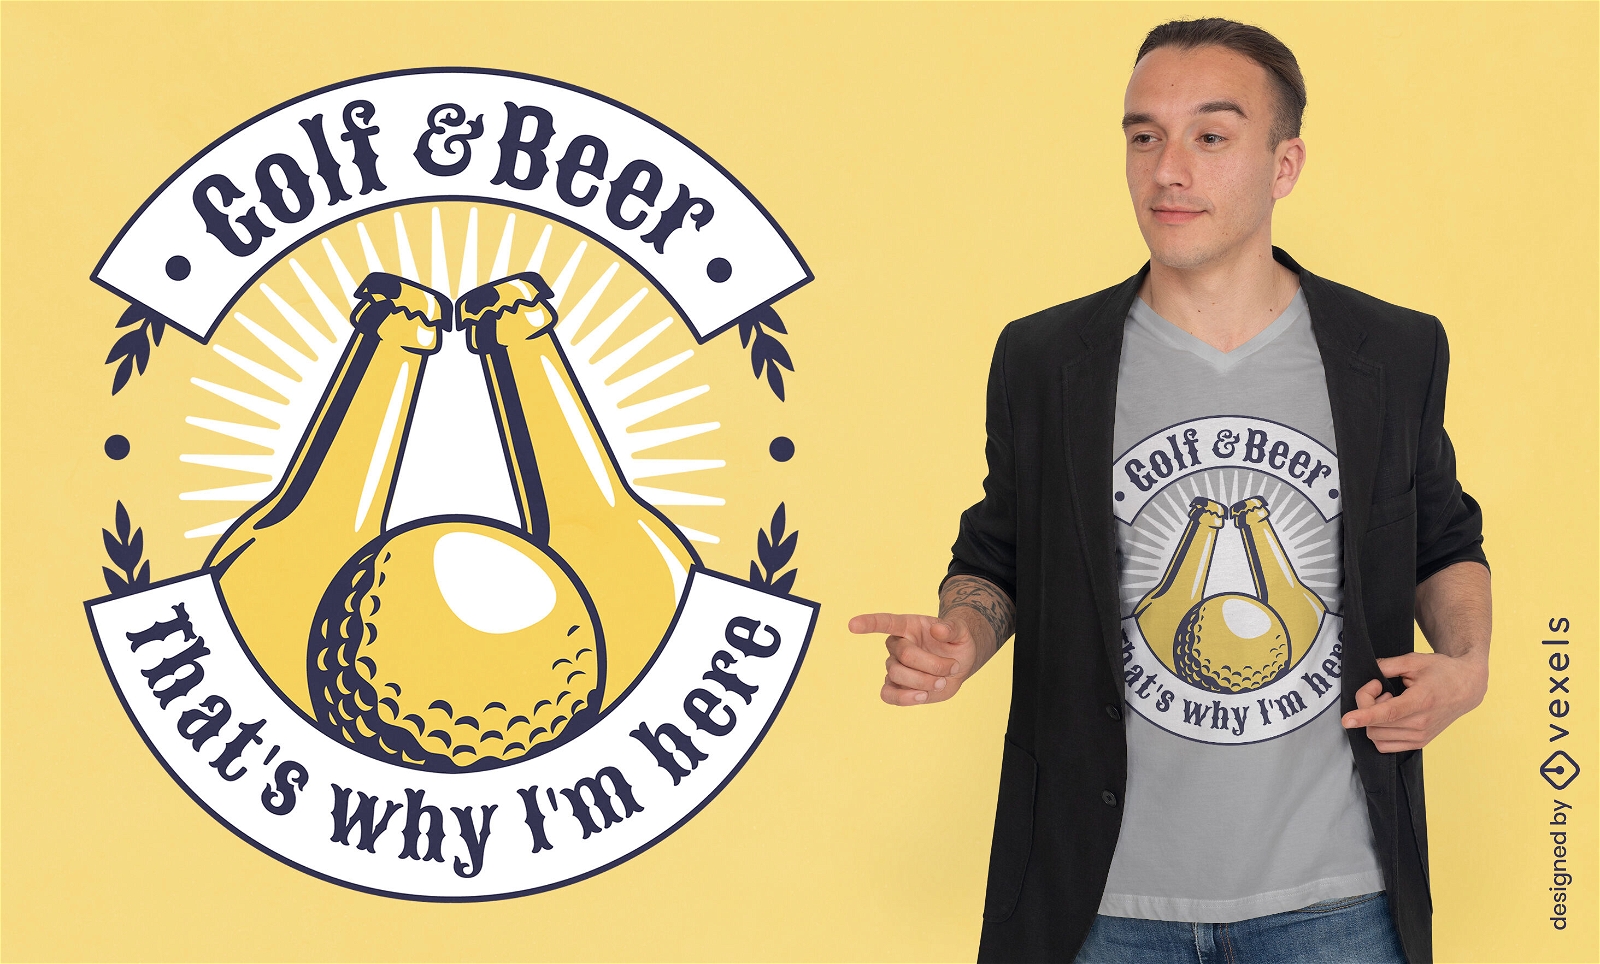 Golf ball and beer bottles t-shirt design